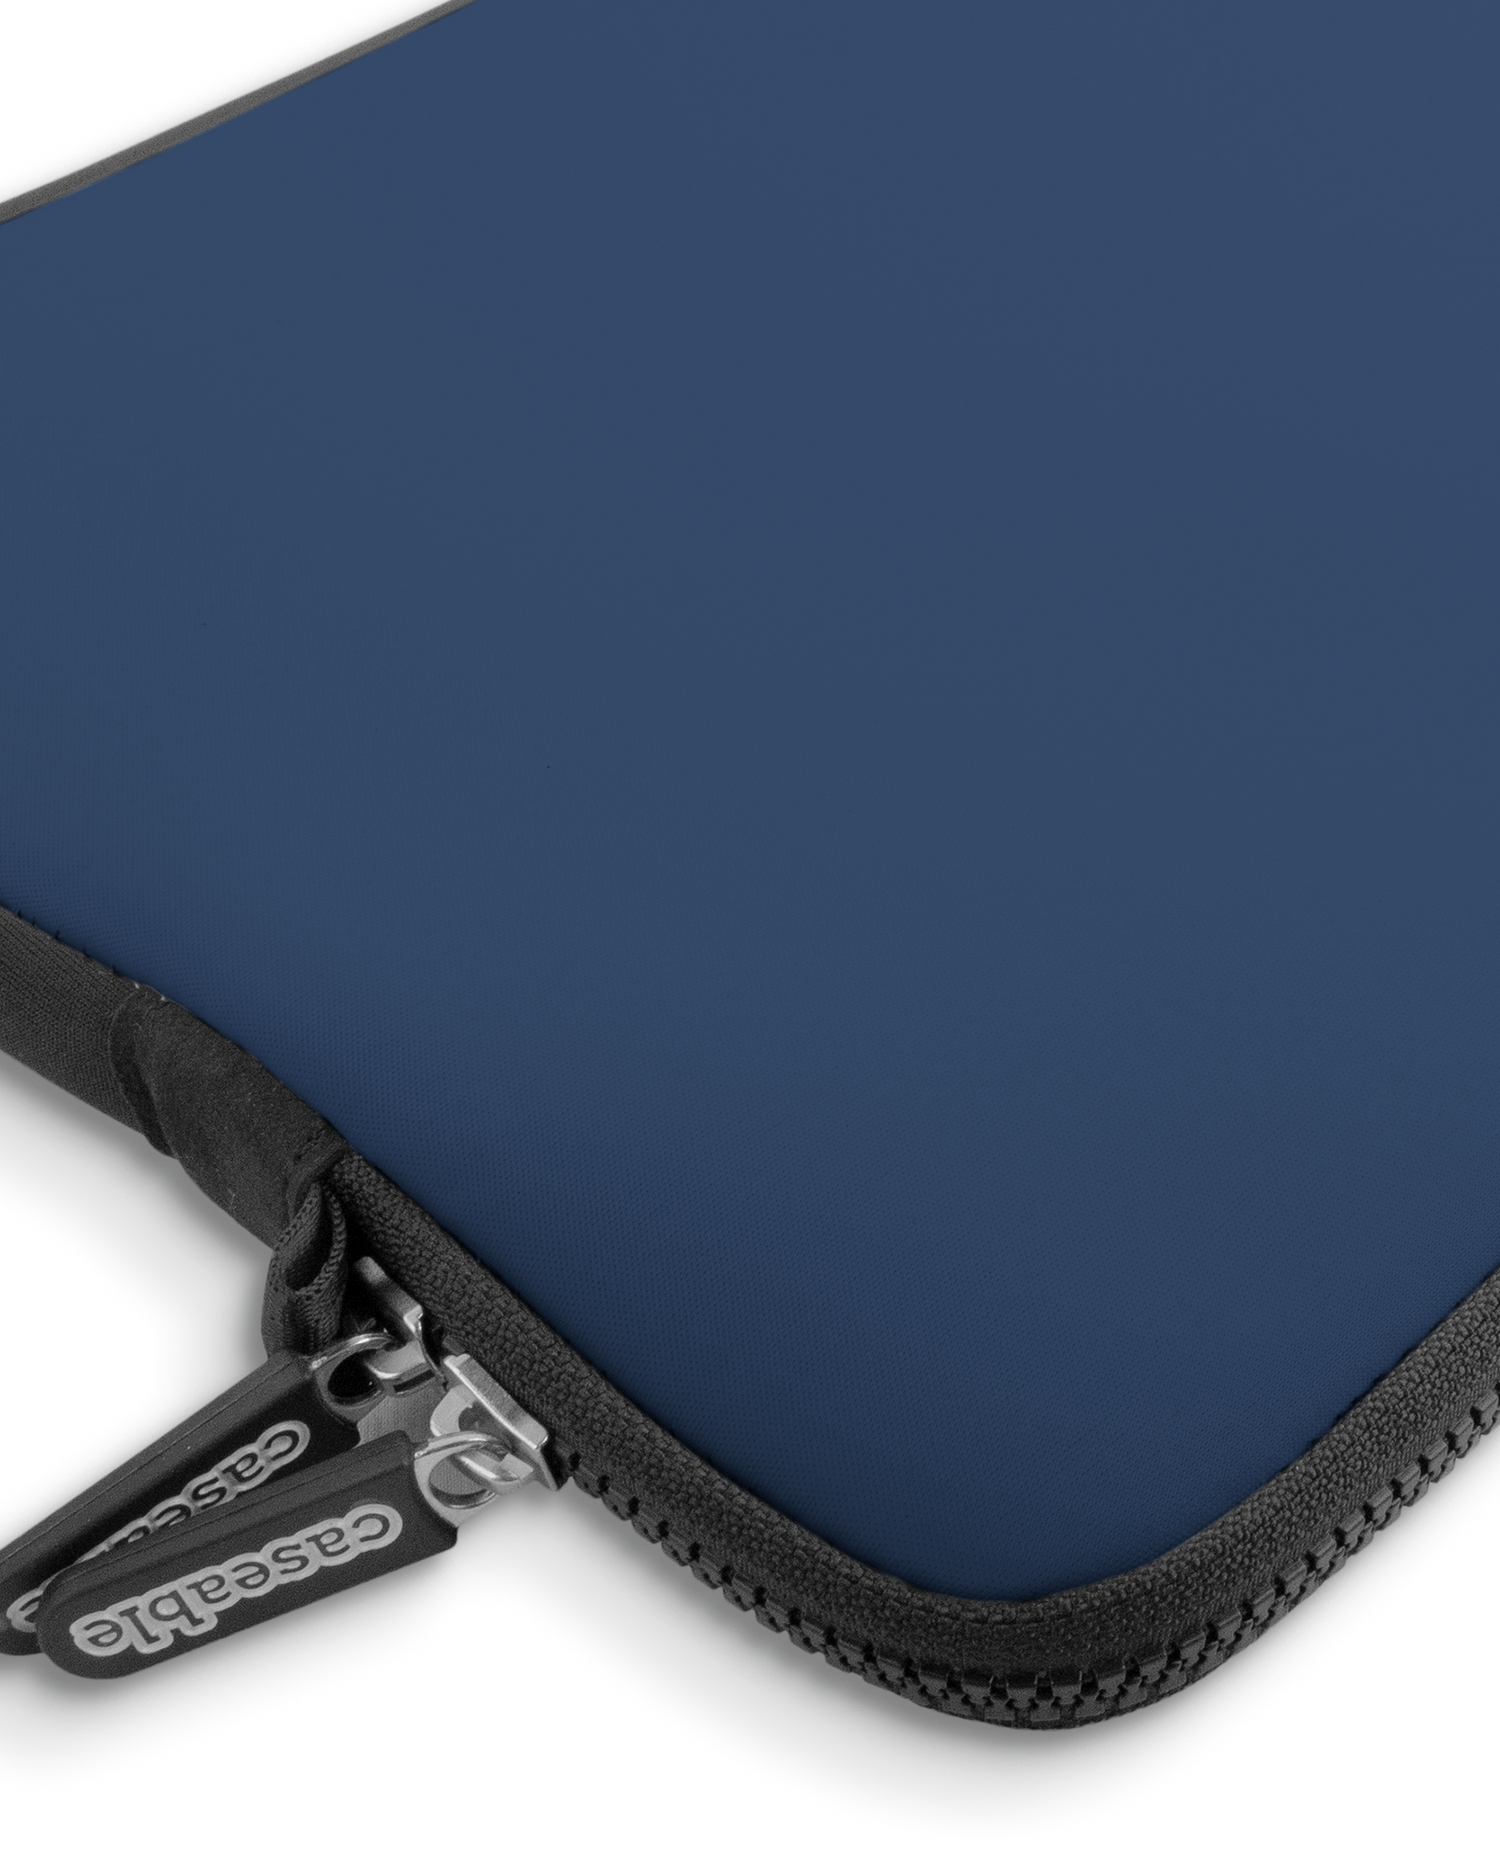 NAVY Premium Laptoptasche 13-14 Zoll mit Gerät im Inneren